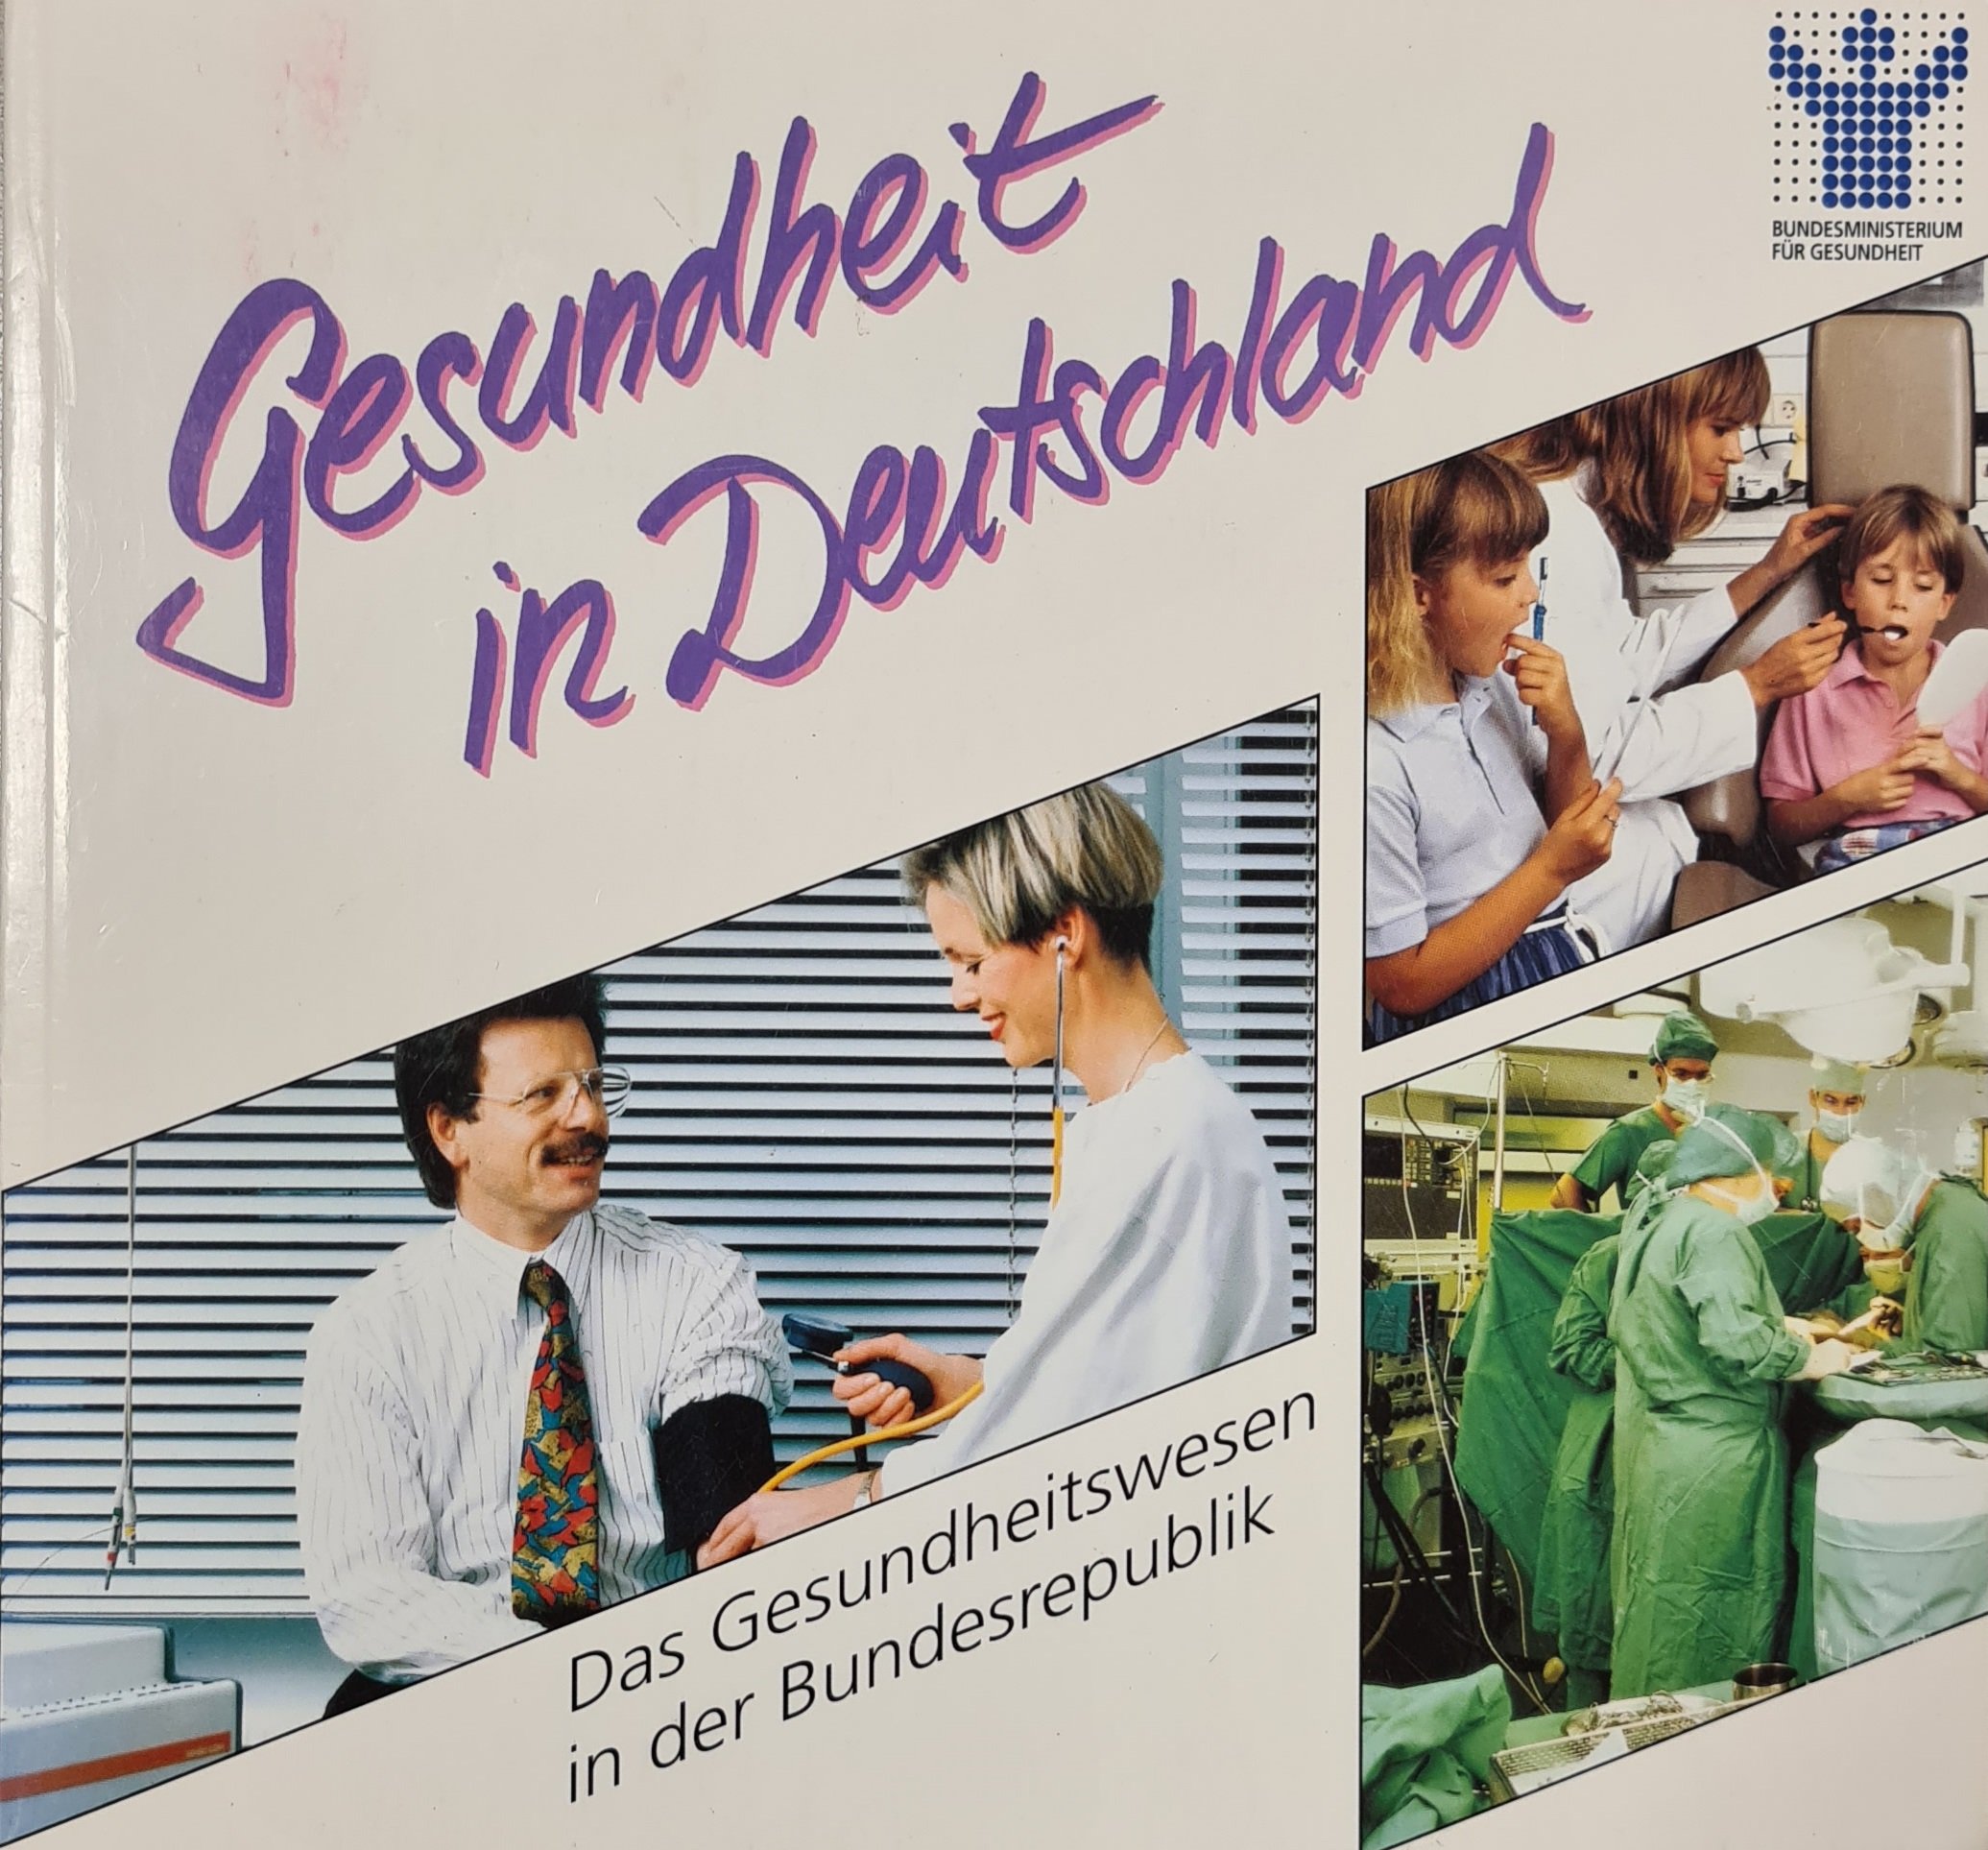 Gesundheit in Deutschland (Krankenhausmuseum Bielefeld e.V. CC BY-NC-SA)